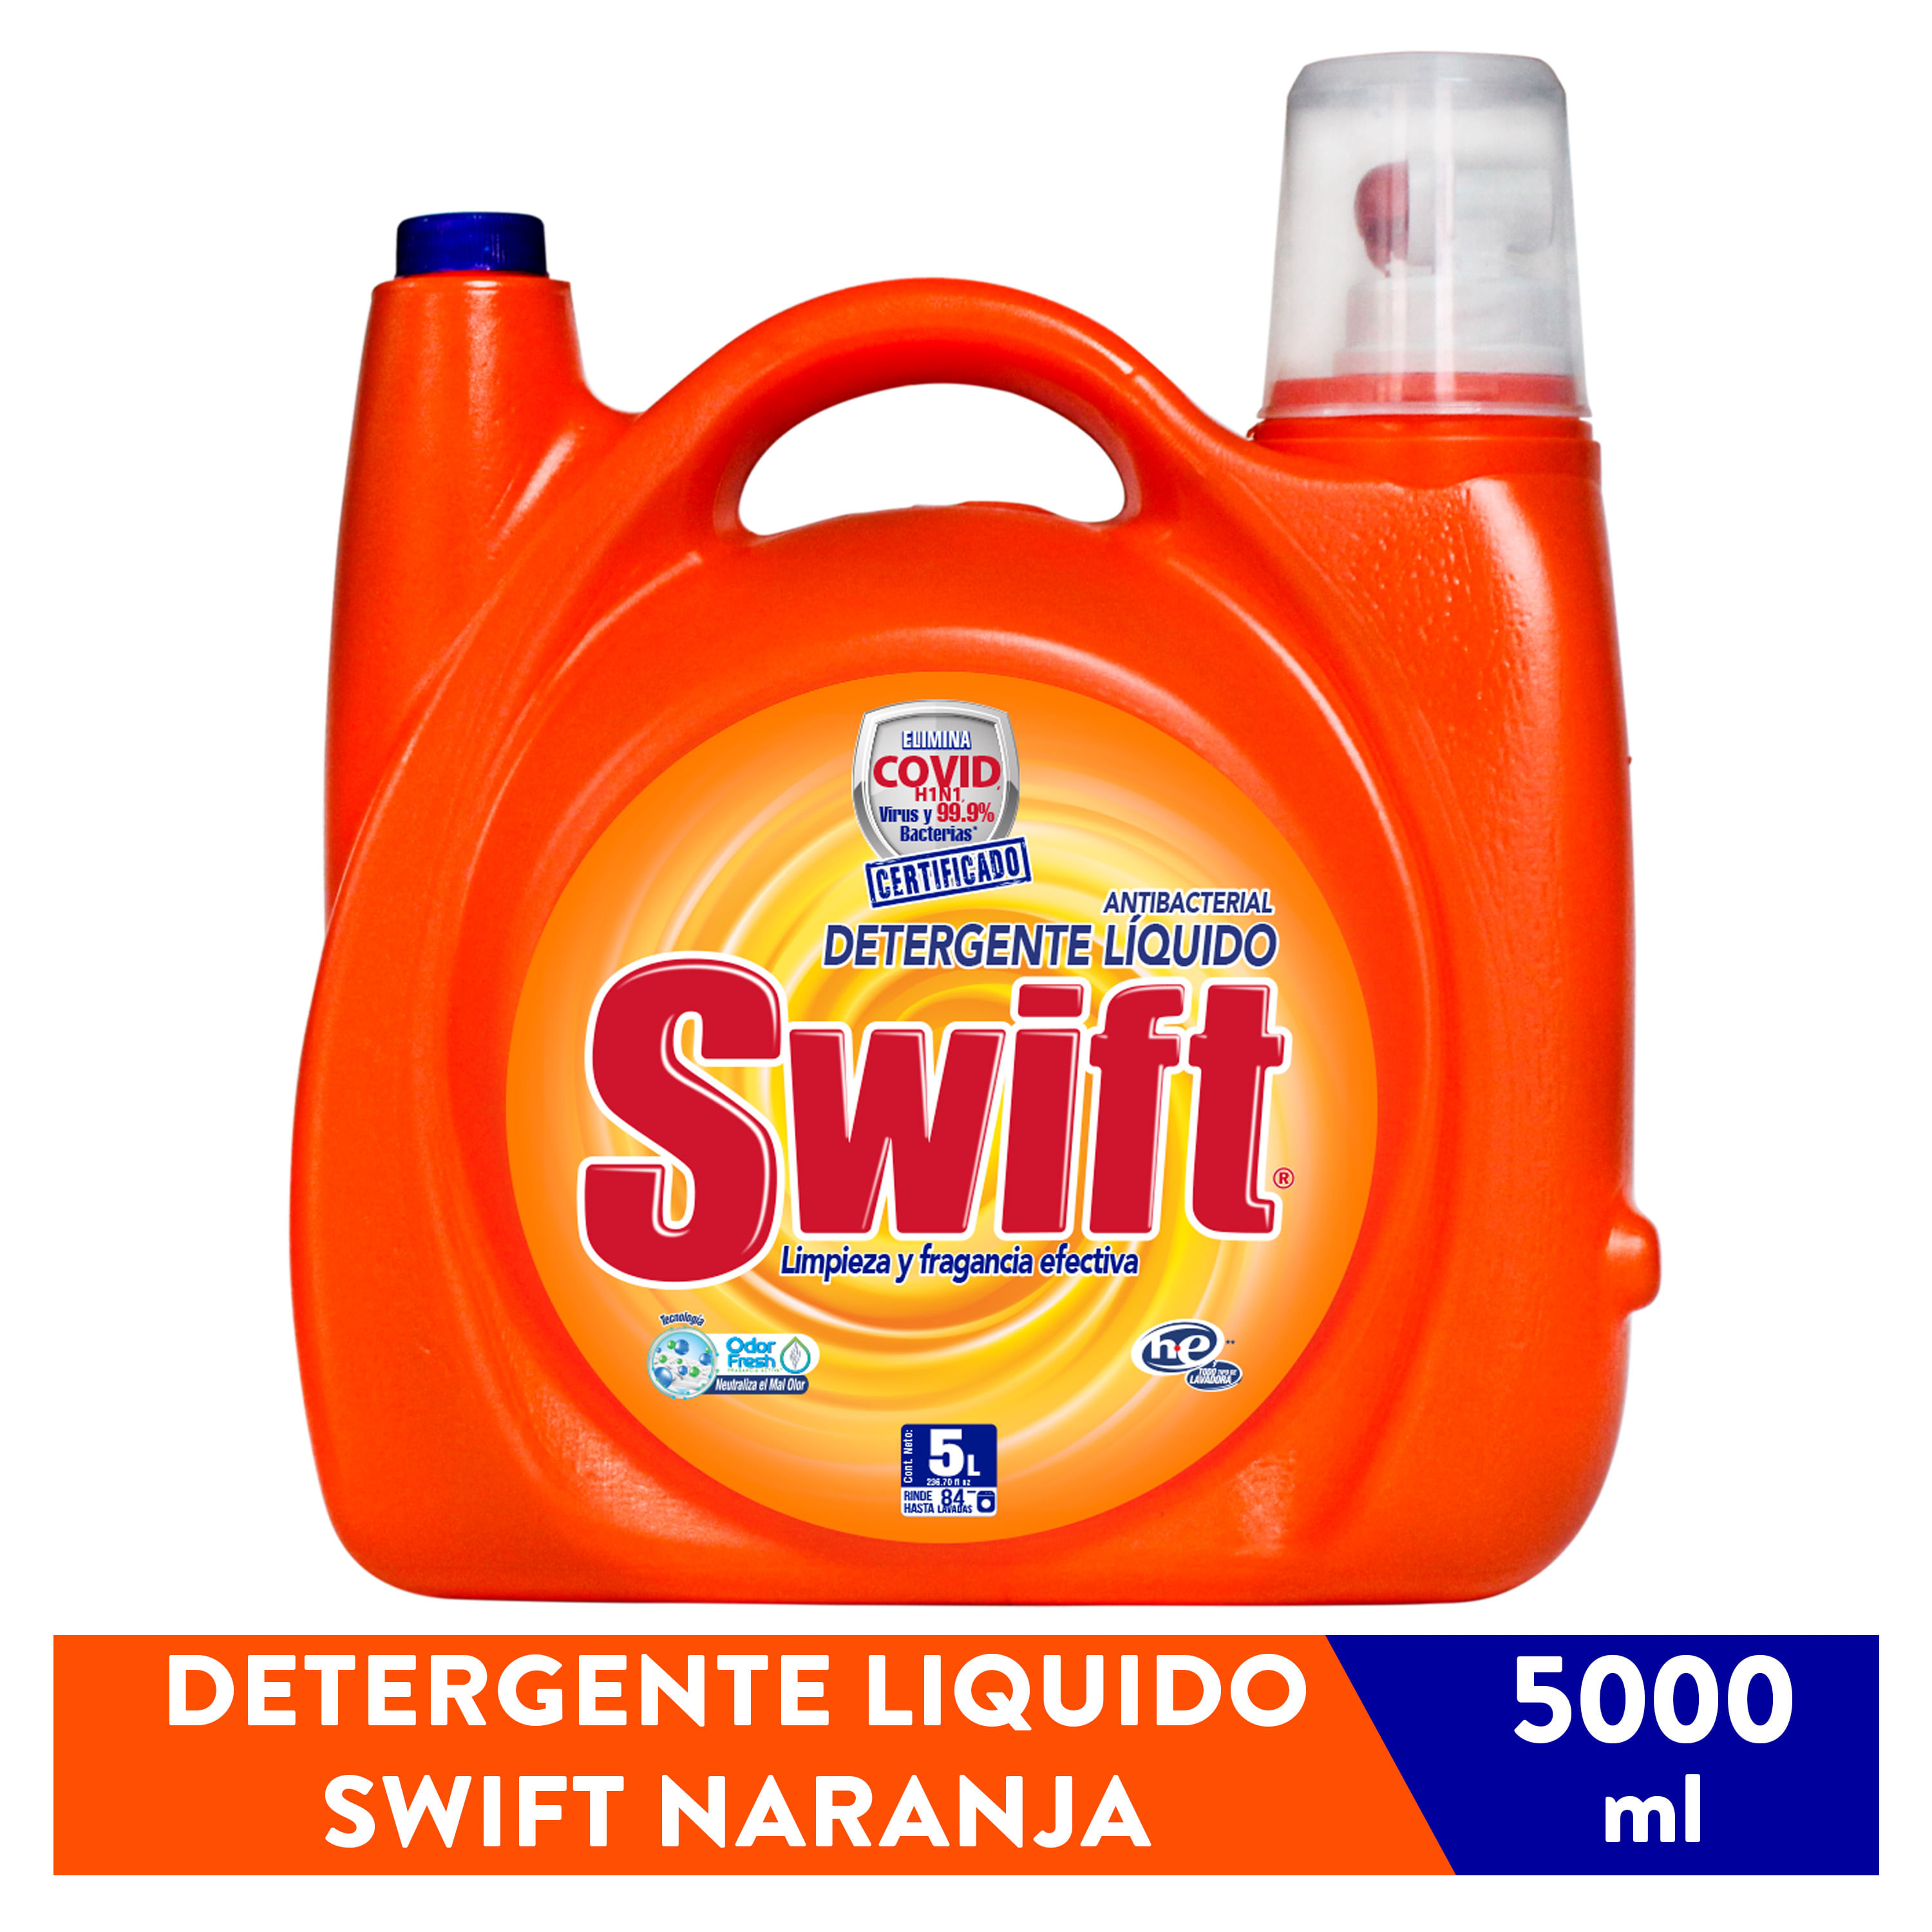 Detergente-Swift-Liquido-Naranja-5000ml-1-14670